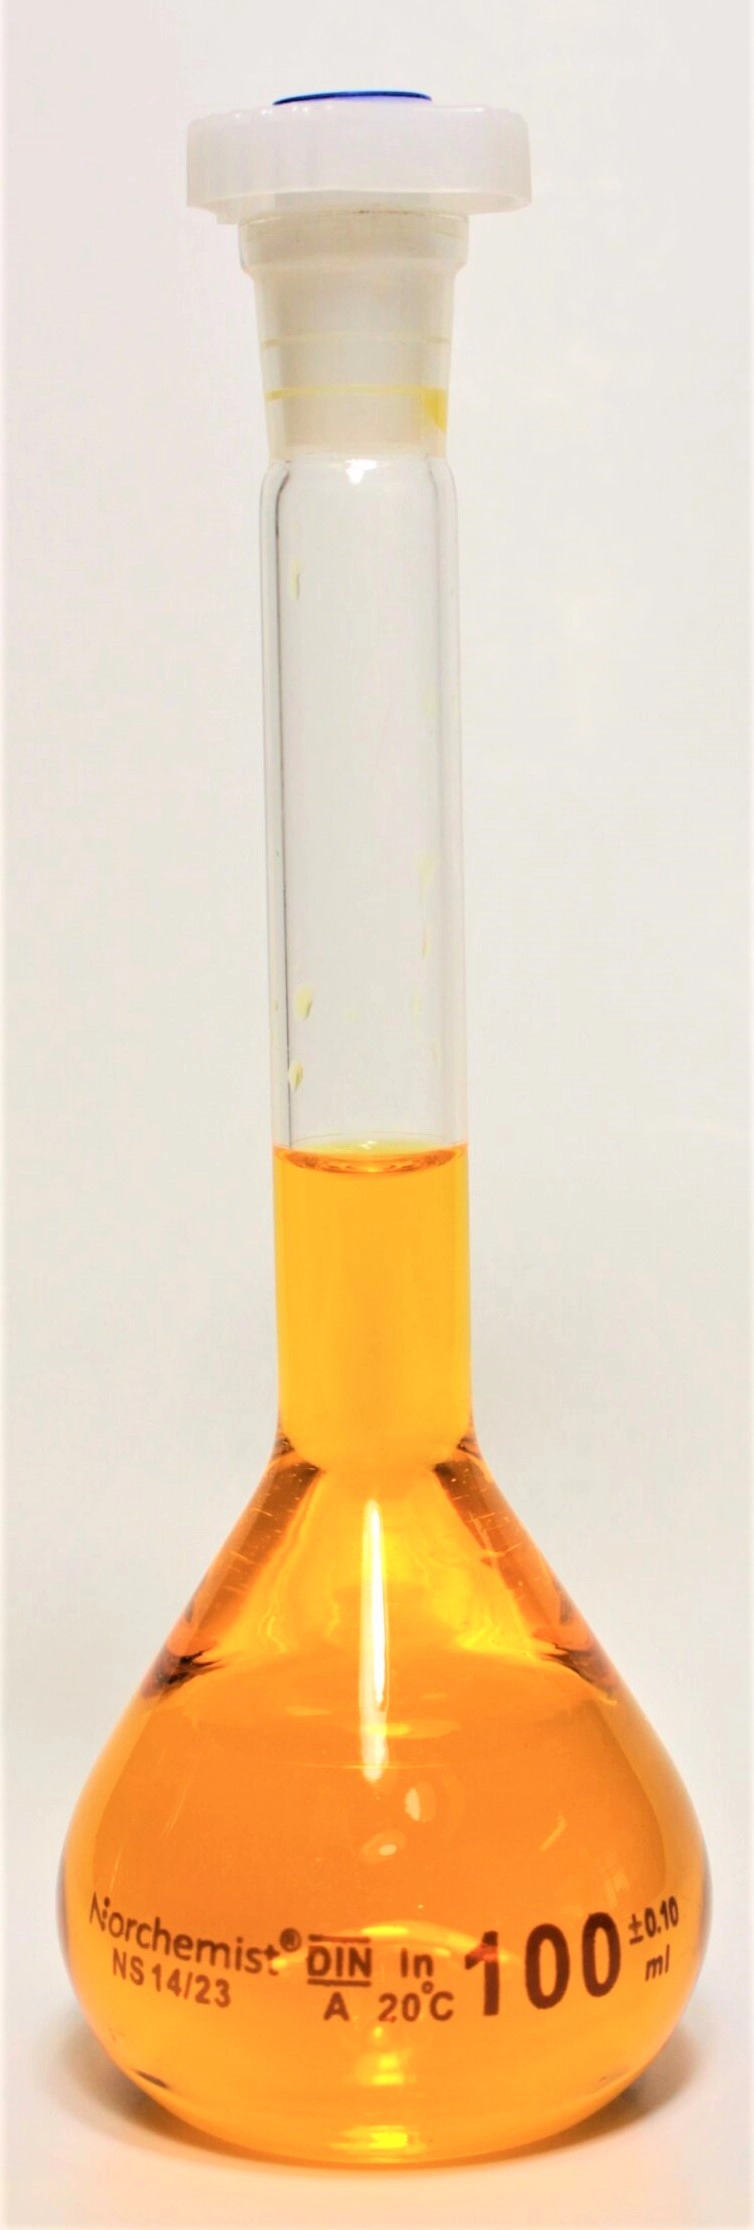 Norchemist GP-FL-0041 Volumetric Flask, Class A (100mL)